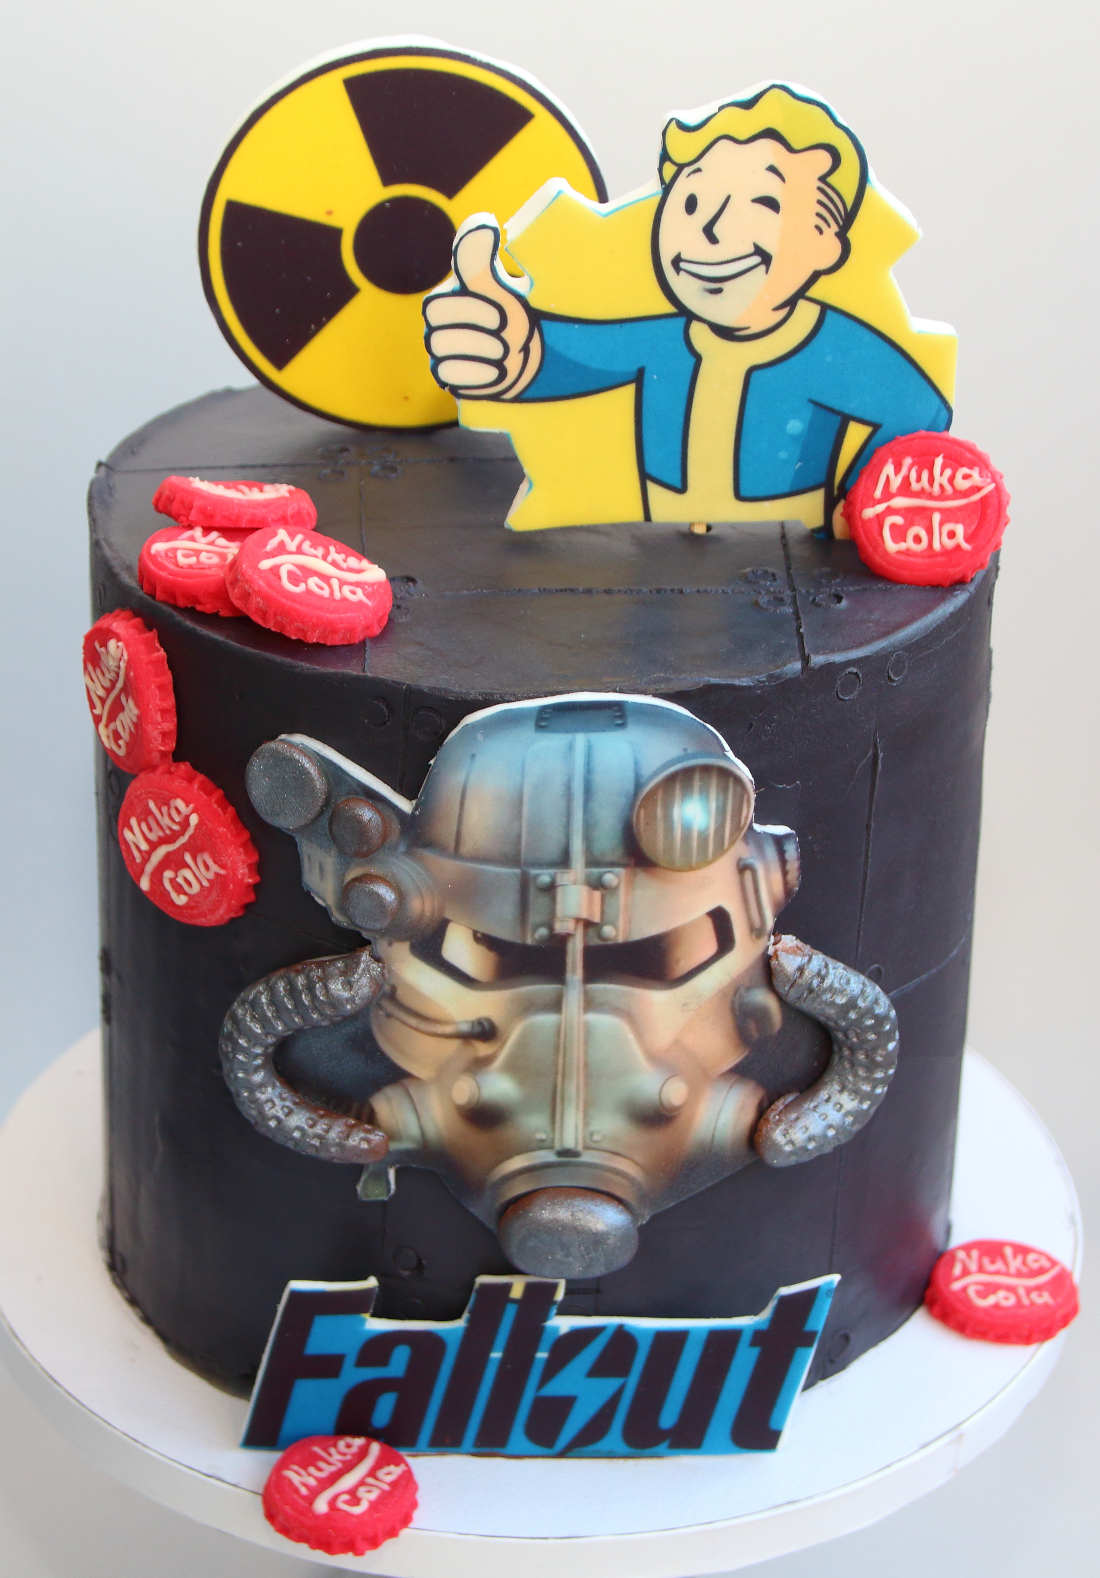 Vault Boy на торте Fallout и знак радиоактивности